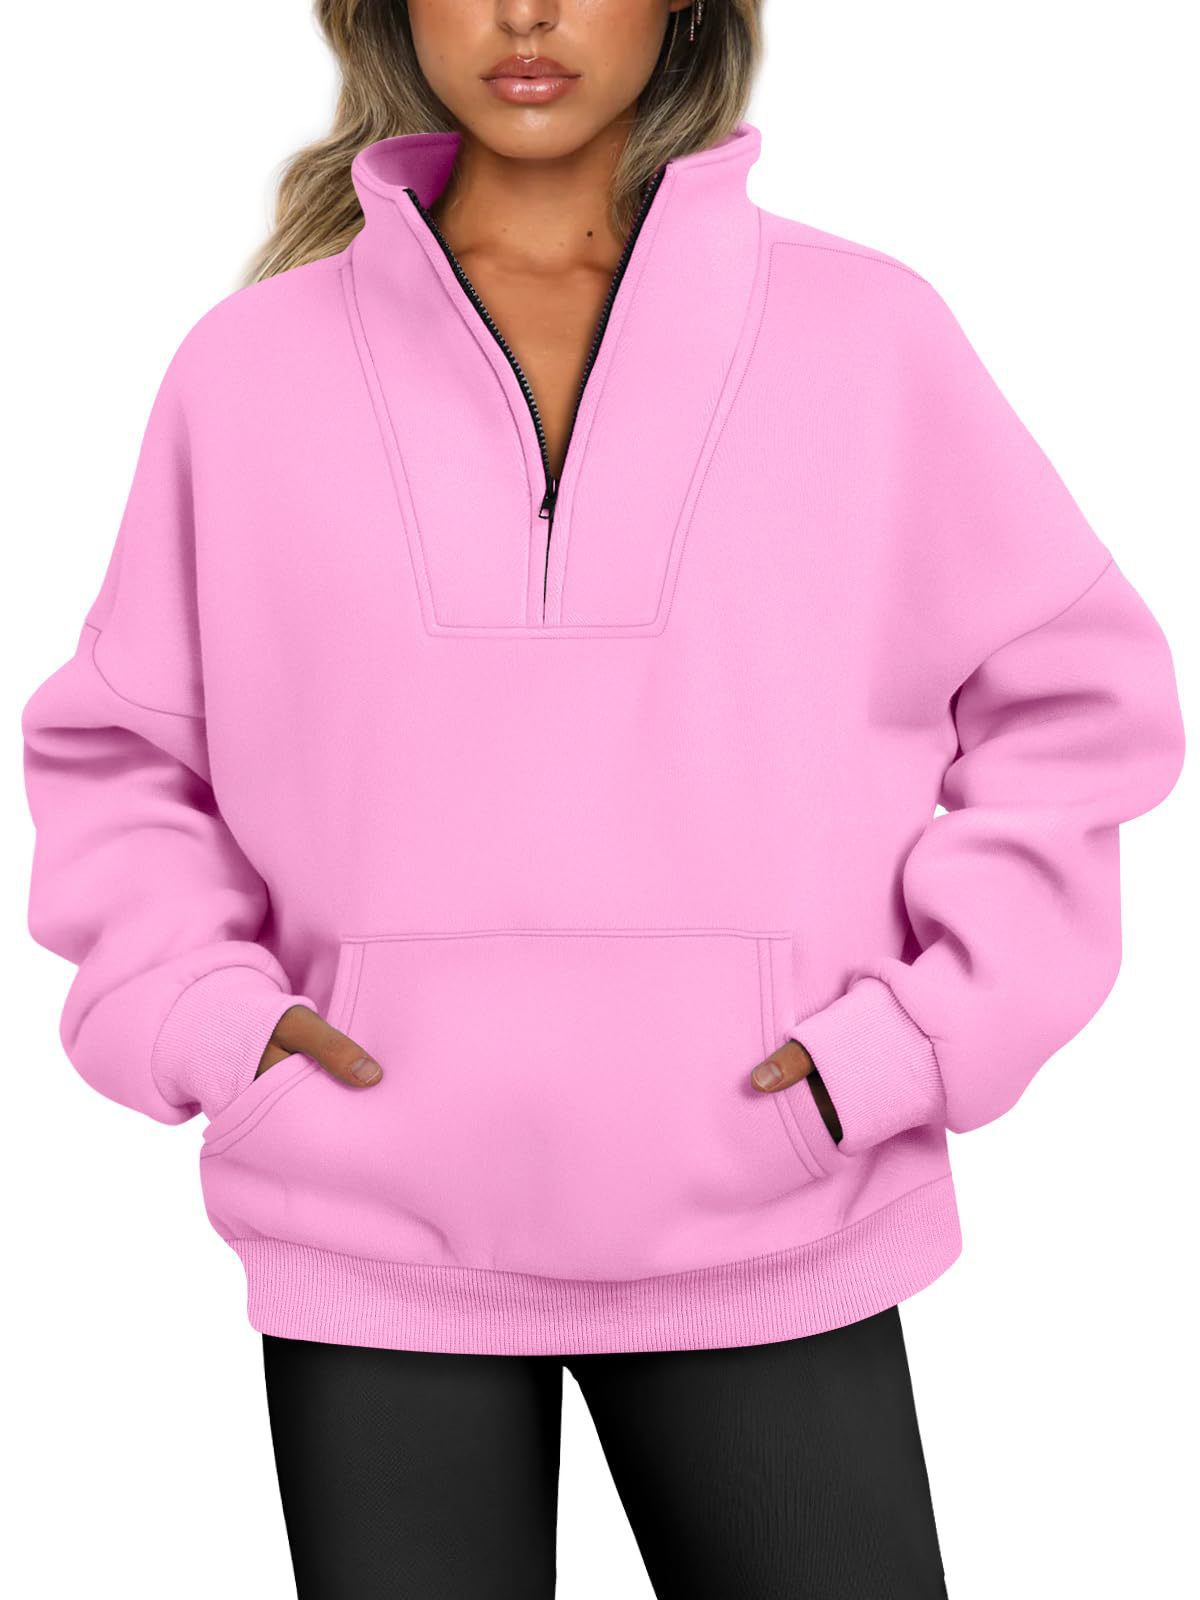 Women's Half-Zip Pullover Fleece Sweatshirt (Buy 2 Free Shipping)